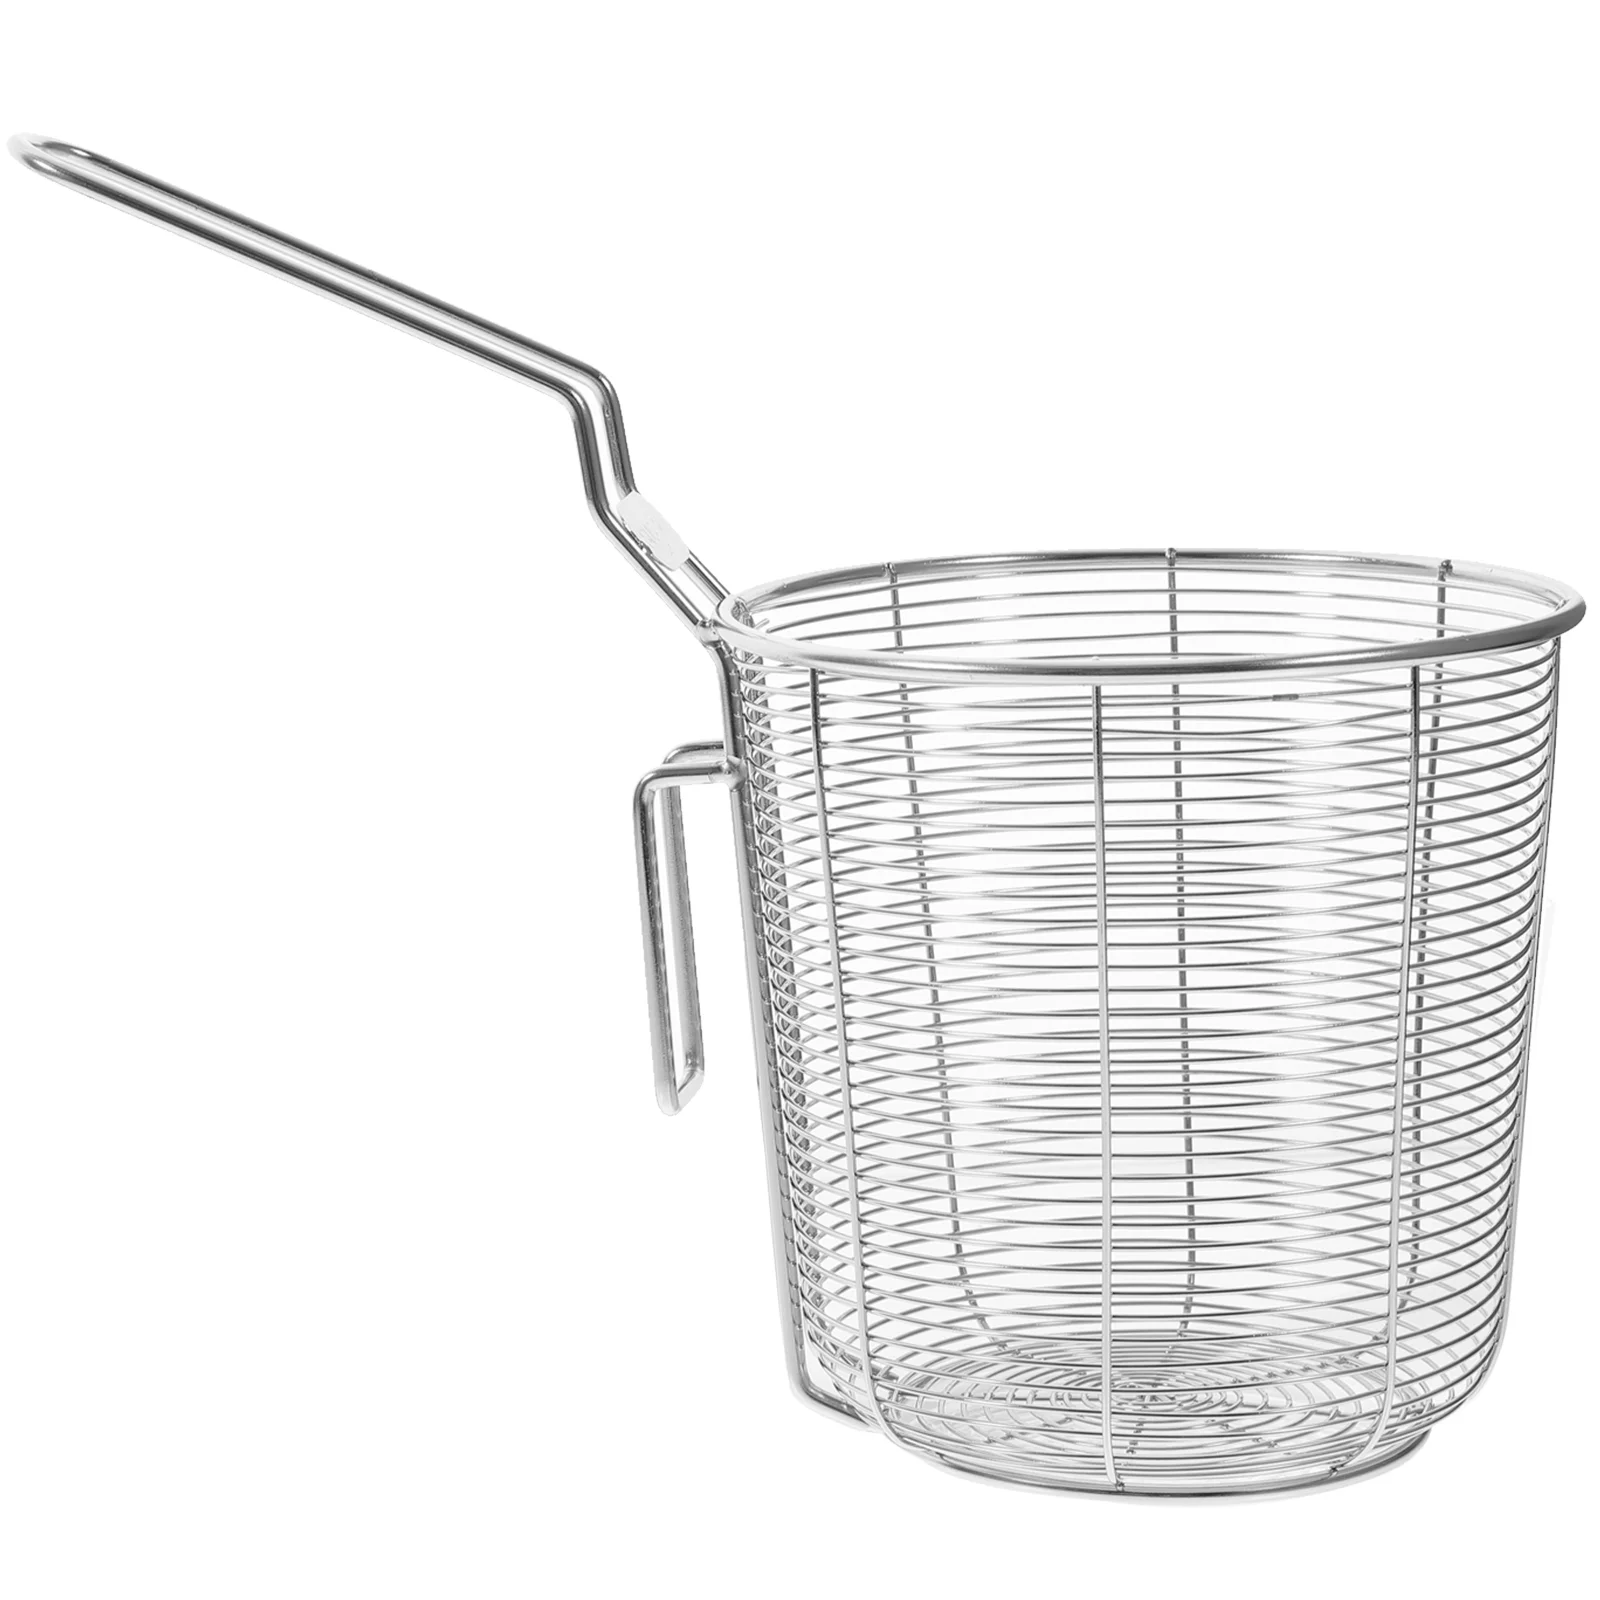 

Strainer Spoons Stainless Steel Colander Noodle Blanching Basket Frying Spoon Strainer Hot Pot Colander Lo Mein Noodle Skimmer